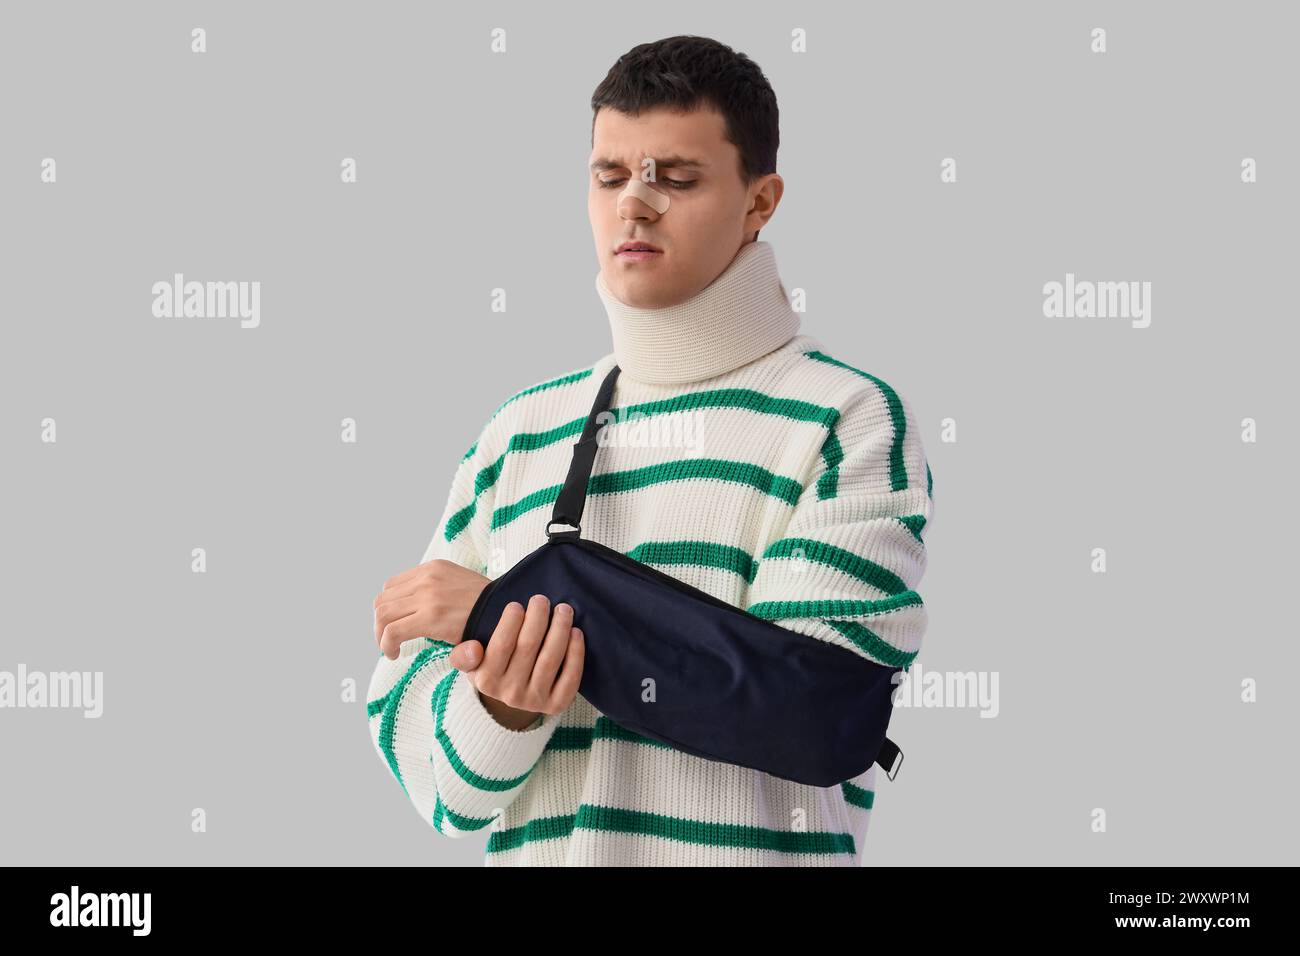 Jeune homme blessé après un accident avec bras cassé sur fond clair Banque D'Images